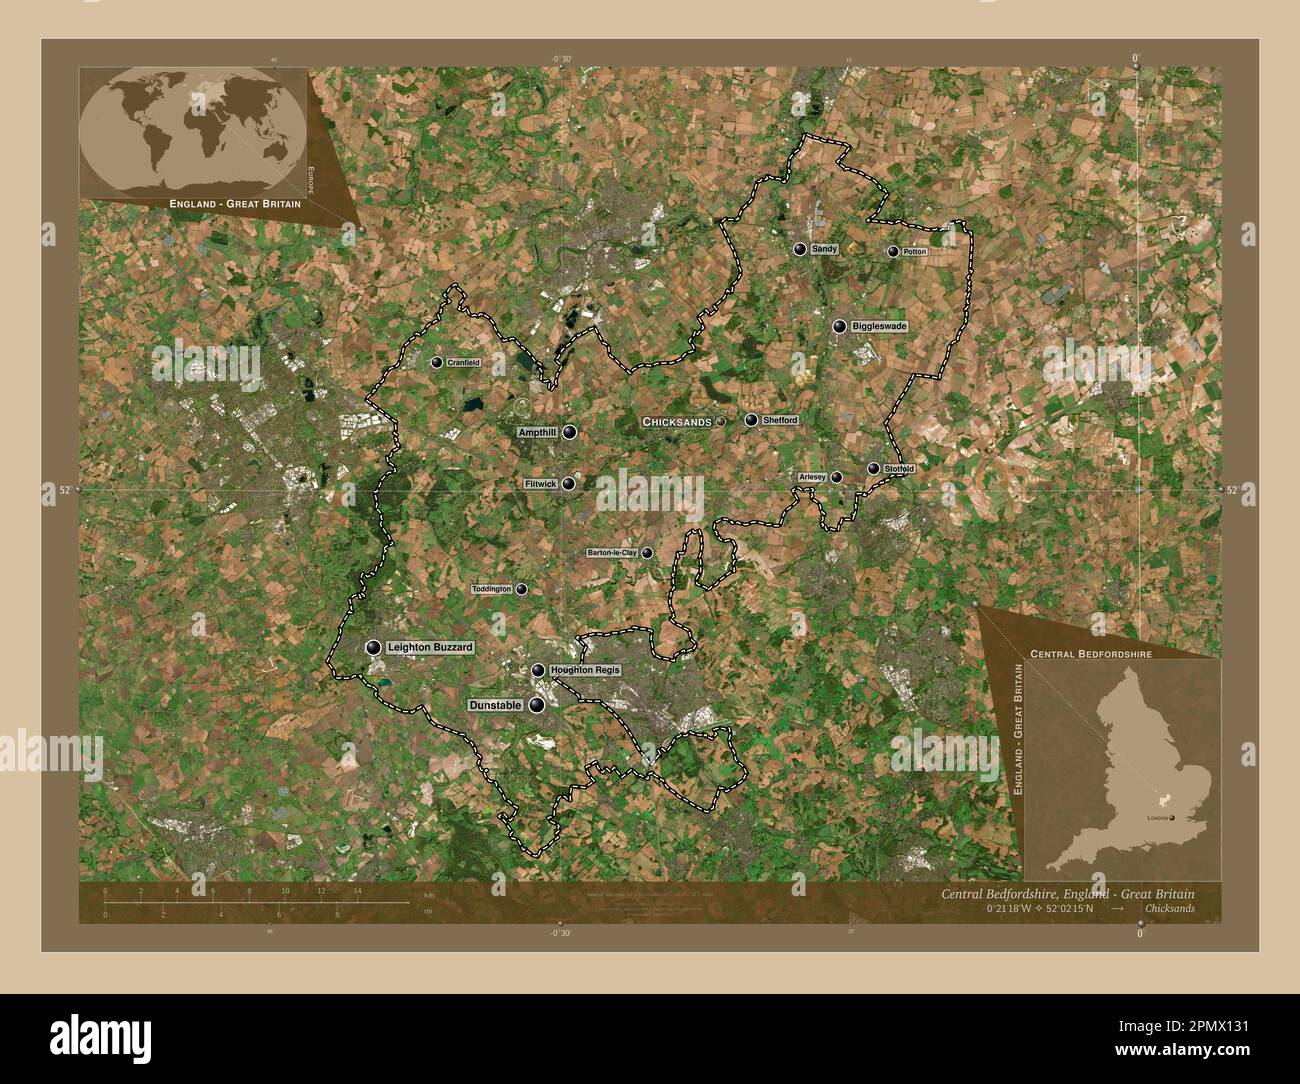 Central Bedfordshire, condado administrativo de Inglaterra - Gran Bretaña. Mapa satelital de baja resolución. Ubicaciones y nombres de las principales ciudades de la región Foto de stock